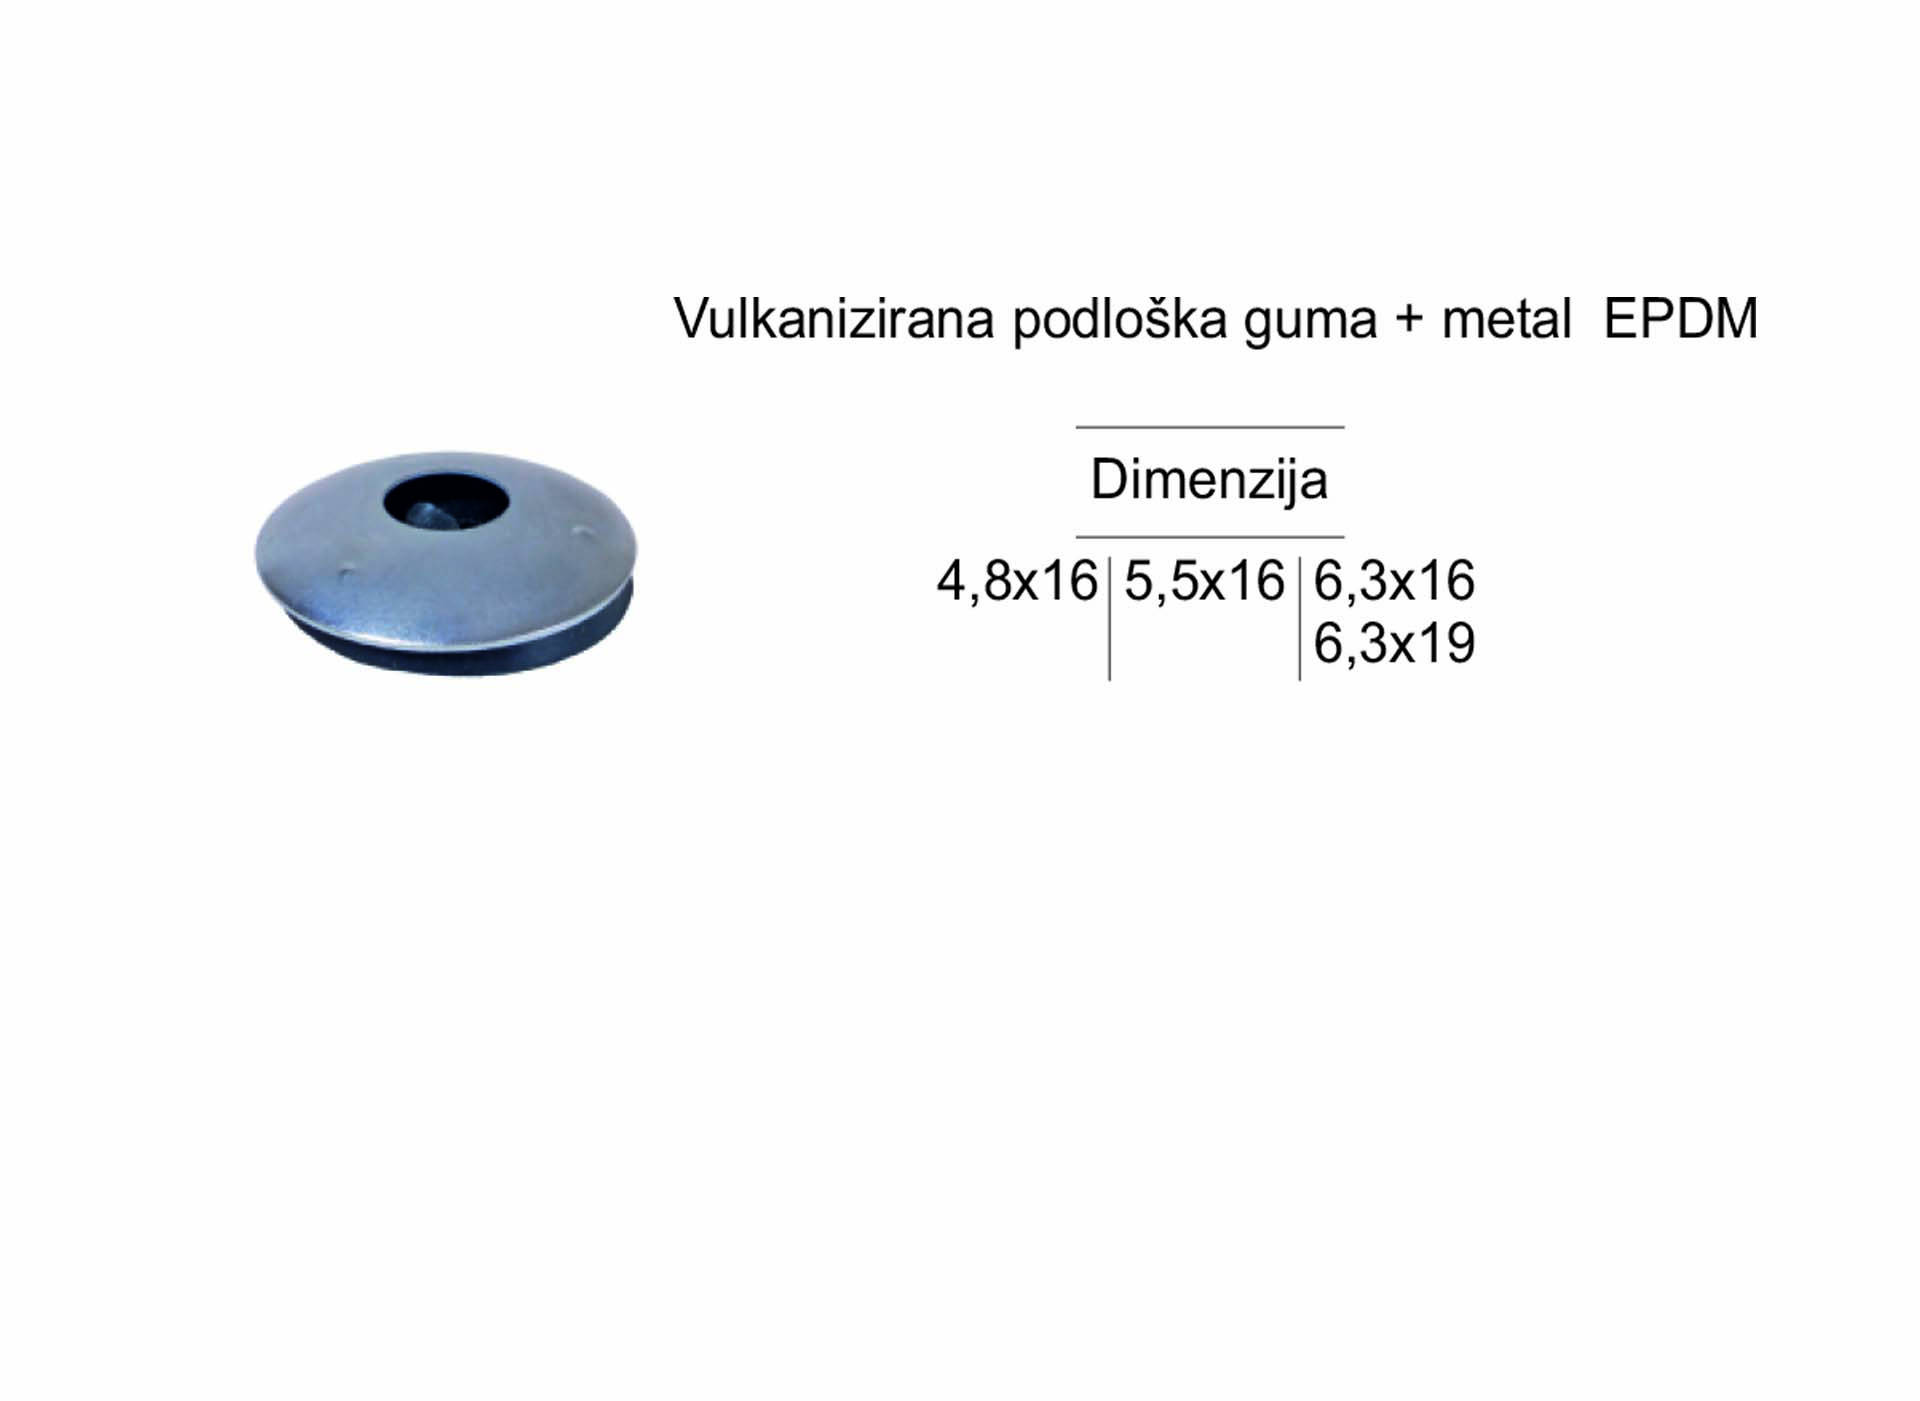 Vulkanizirana podloška guma - metal EPDM